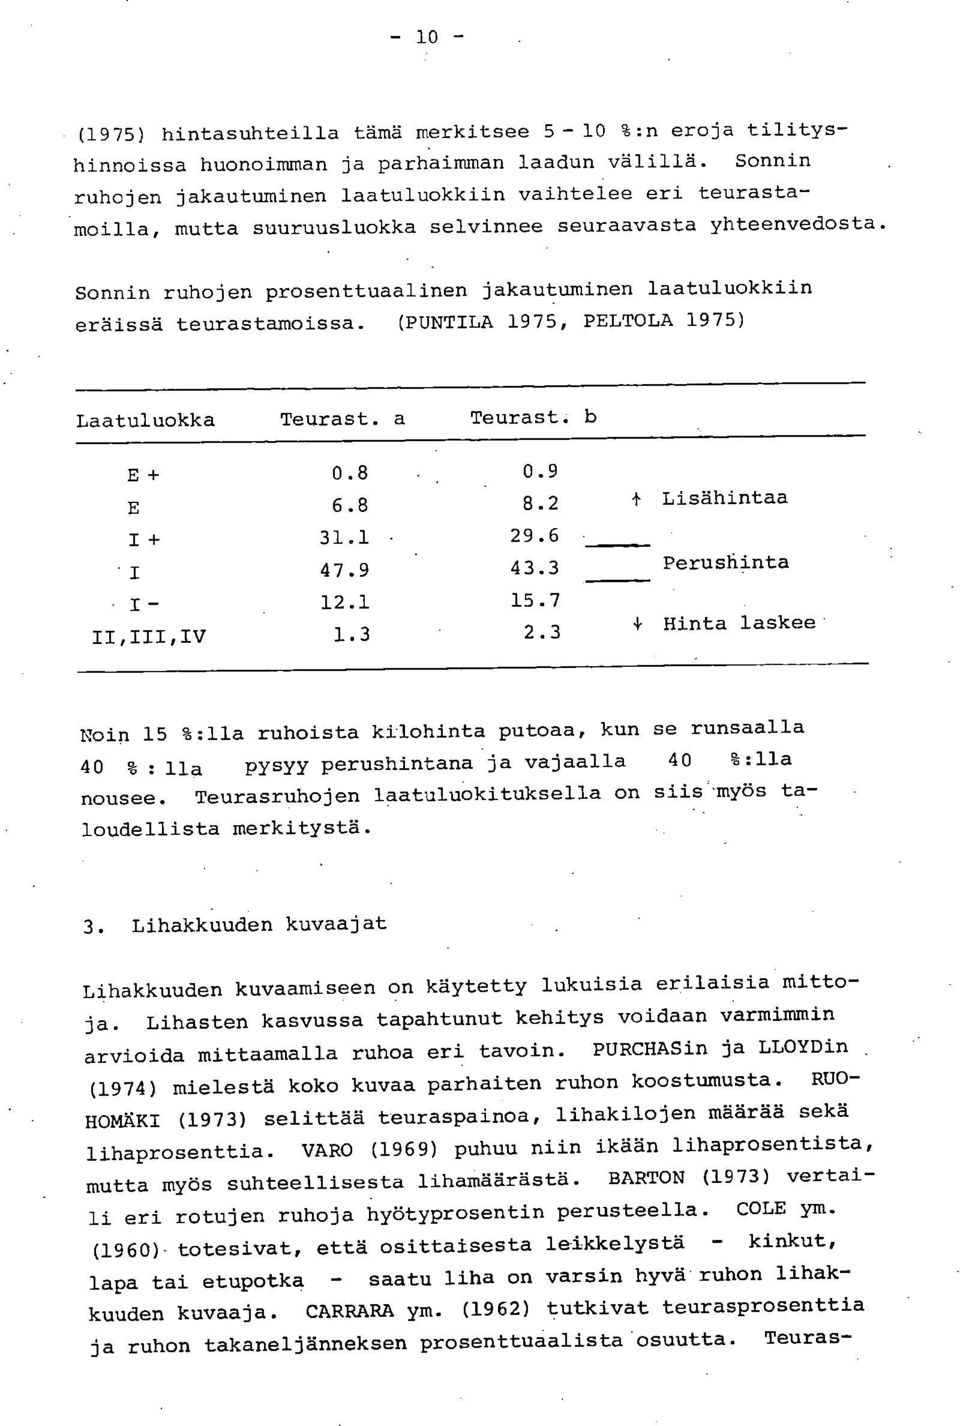 Sonnin ruhojen prosenttuaalinen jakautuminen laatuluokkiin eräissä teurastamoissa. (PUNTILA 1975, PELTOLA 1975) Laatuluokka Teurast. a Teurast. b E + 0.8 0.9 E 6.8 8.2 Lisähintaa 1+ 31.1 29.6 I 47.